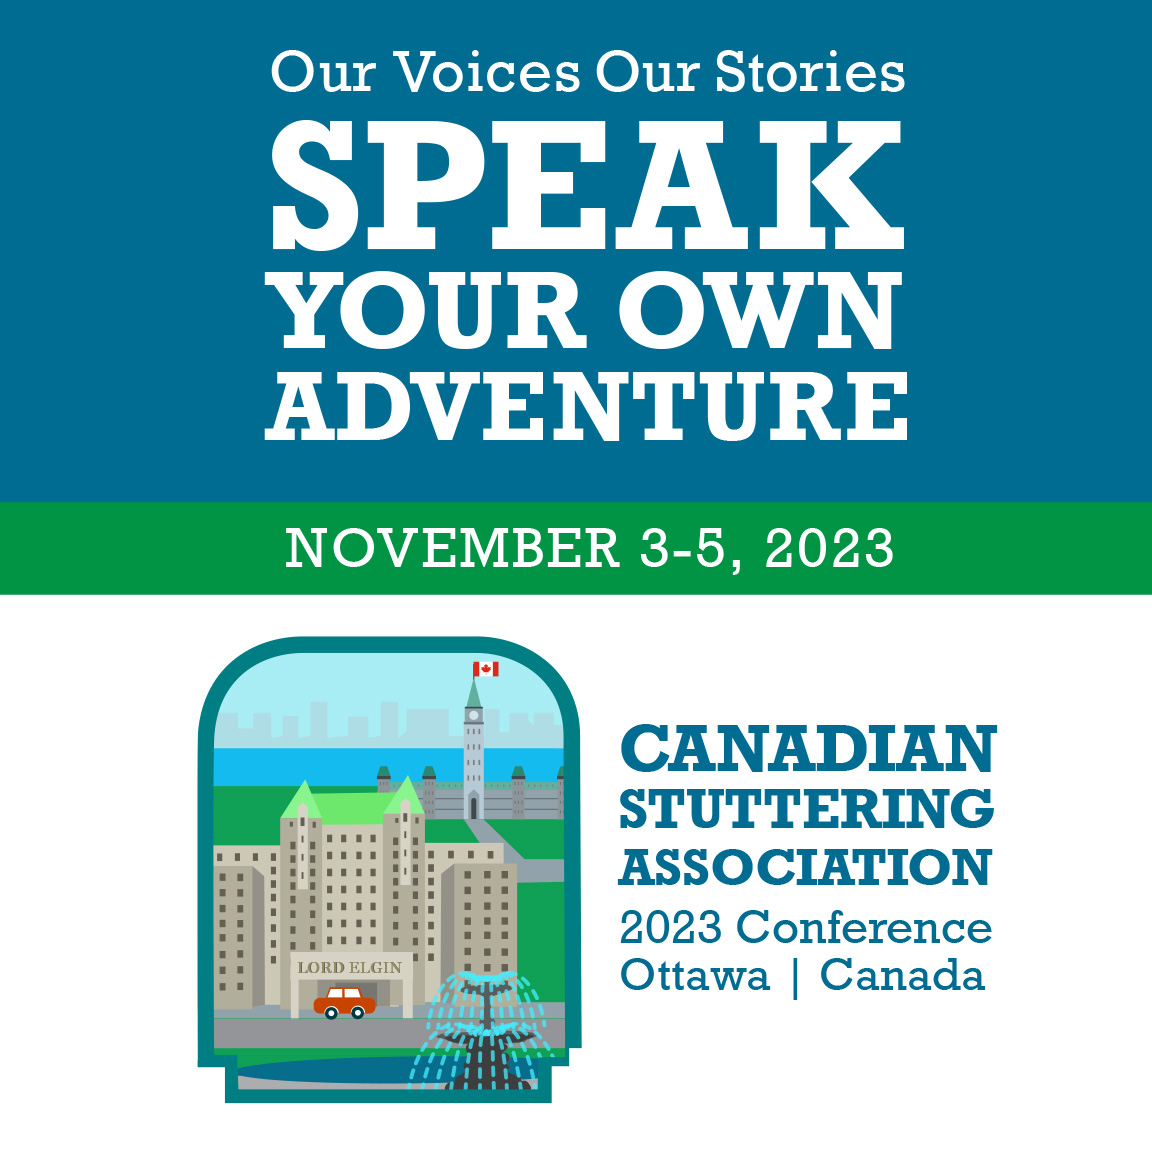 Our Voices, Our Stores: Speak Your Own Adventure - November 3-5, Ottawa, Ontario.